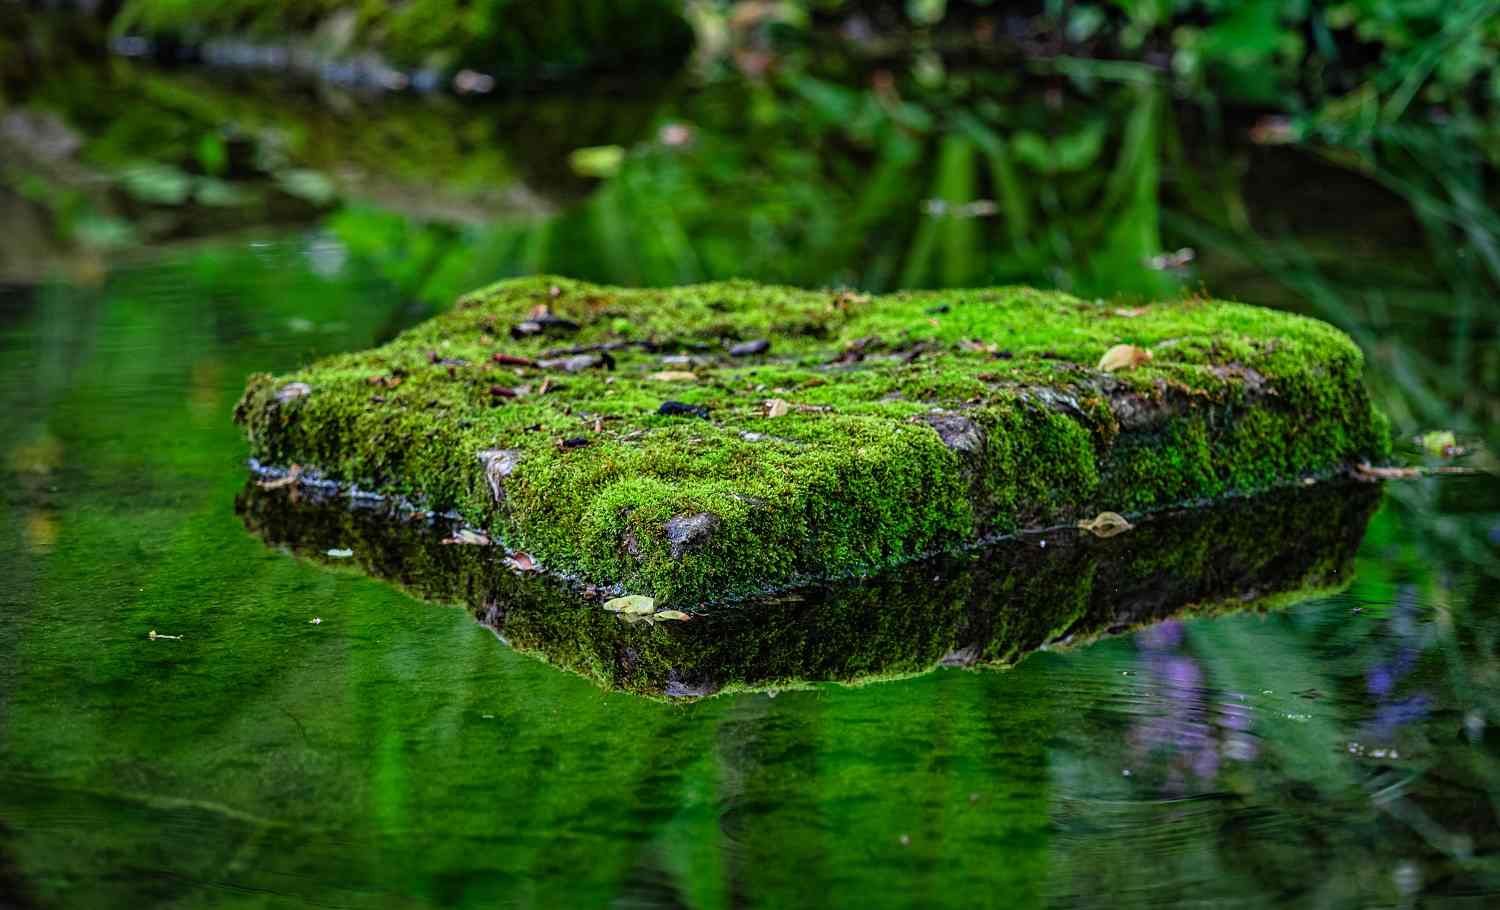 moosbewachsener Stein von Wasser umgeben in einem Bach